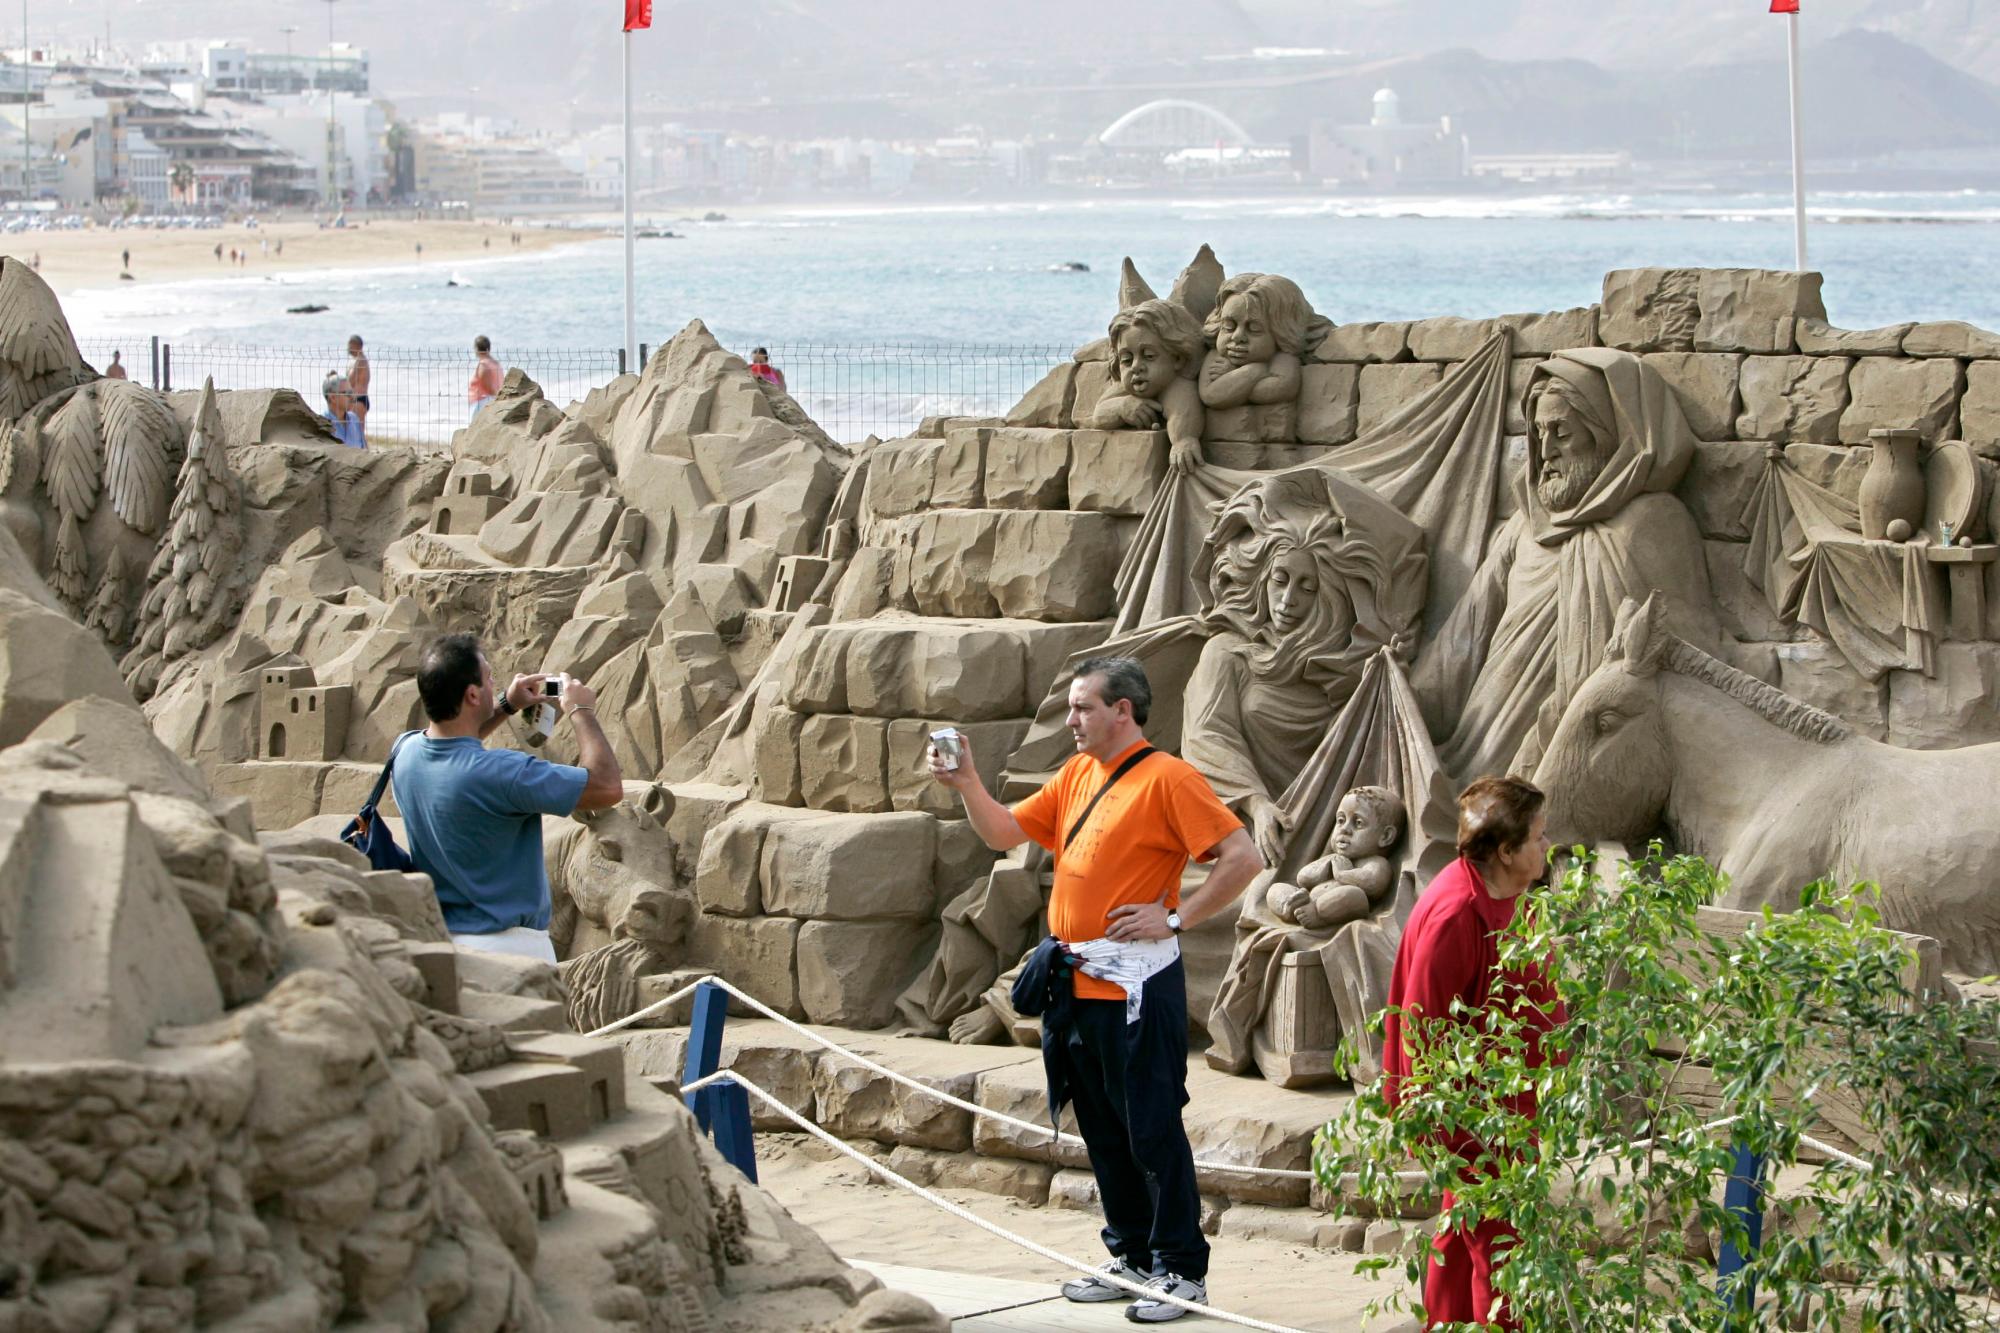 Varios turistas se hacen fotos en el mayor belén de arena de Europa, en la playa de Las Canteras (Las Palmas de Gran Canaria), donde se han juntado ocho escultores de varios países para unir arte y tradición en esta espectacular obra.